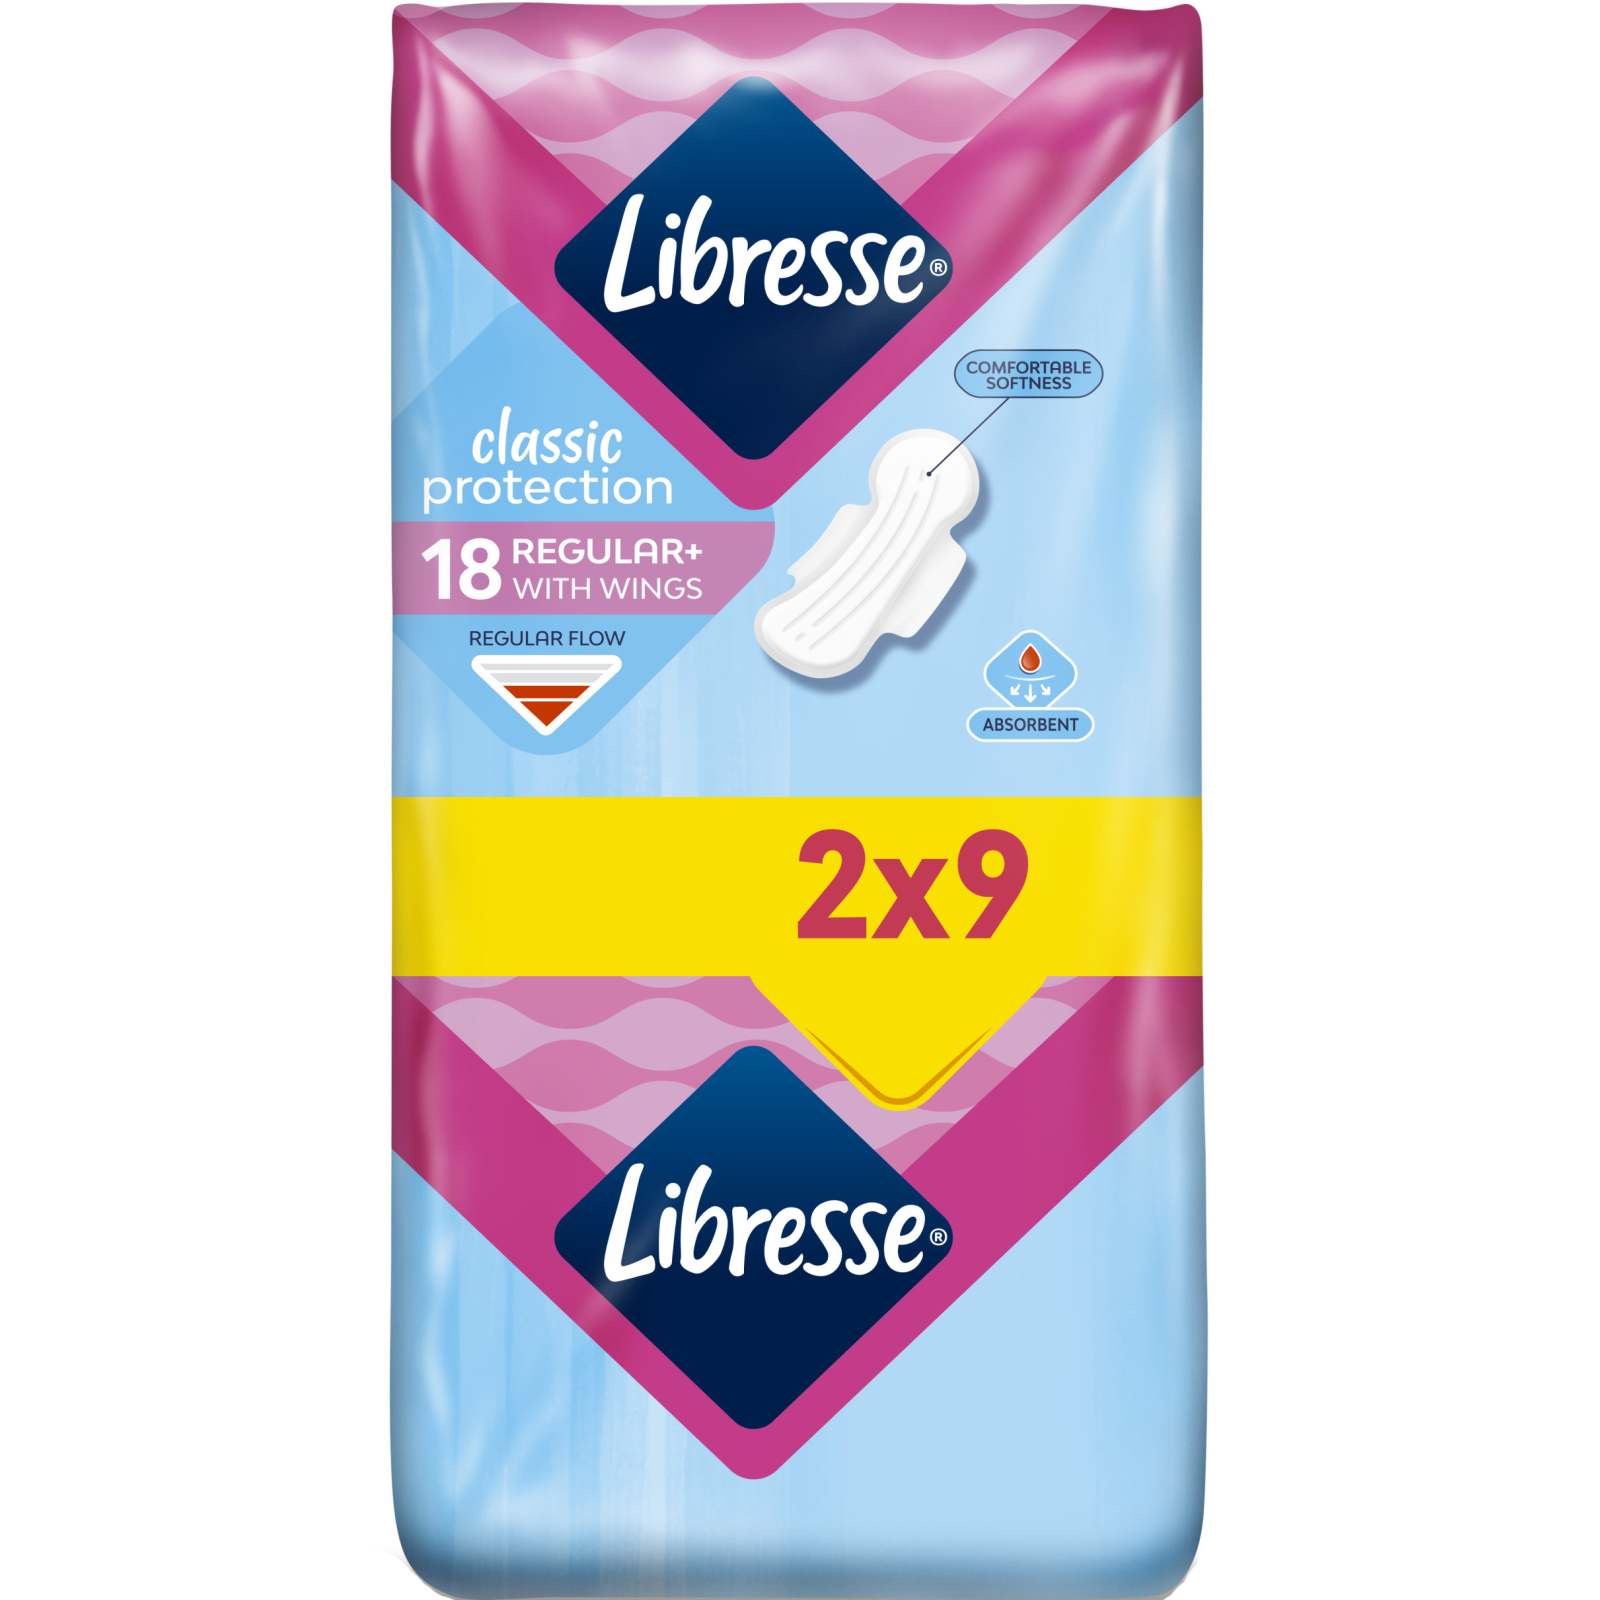 Гігієнічні прокладки Libresse Classic Protection Regular 9 шт. (7322541233390)